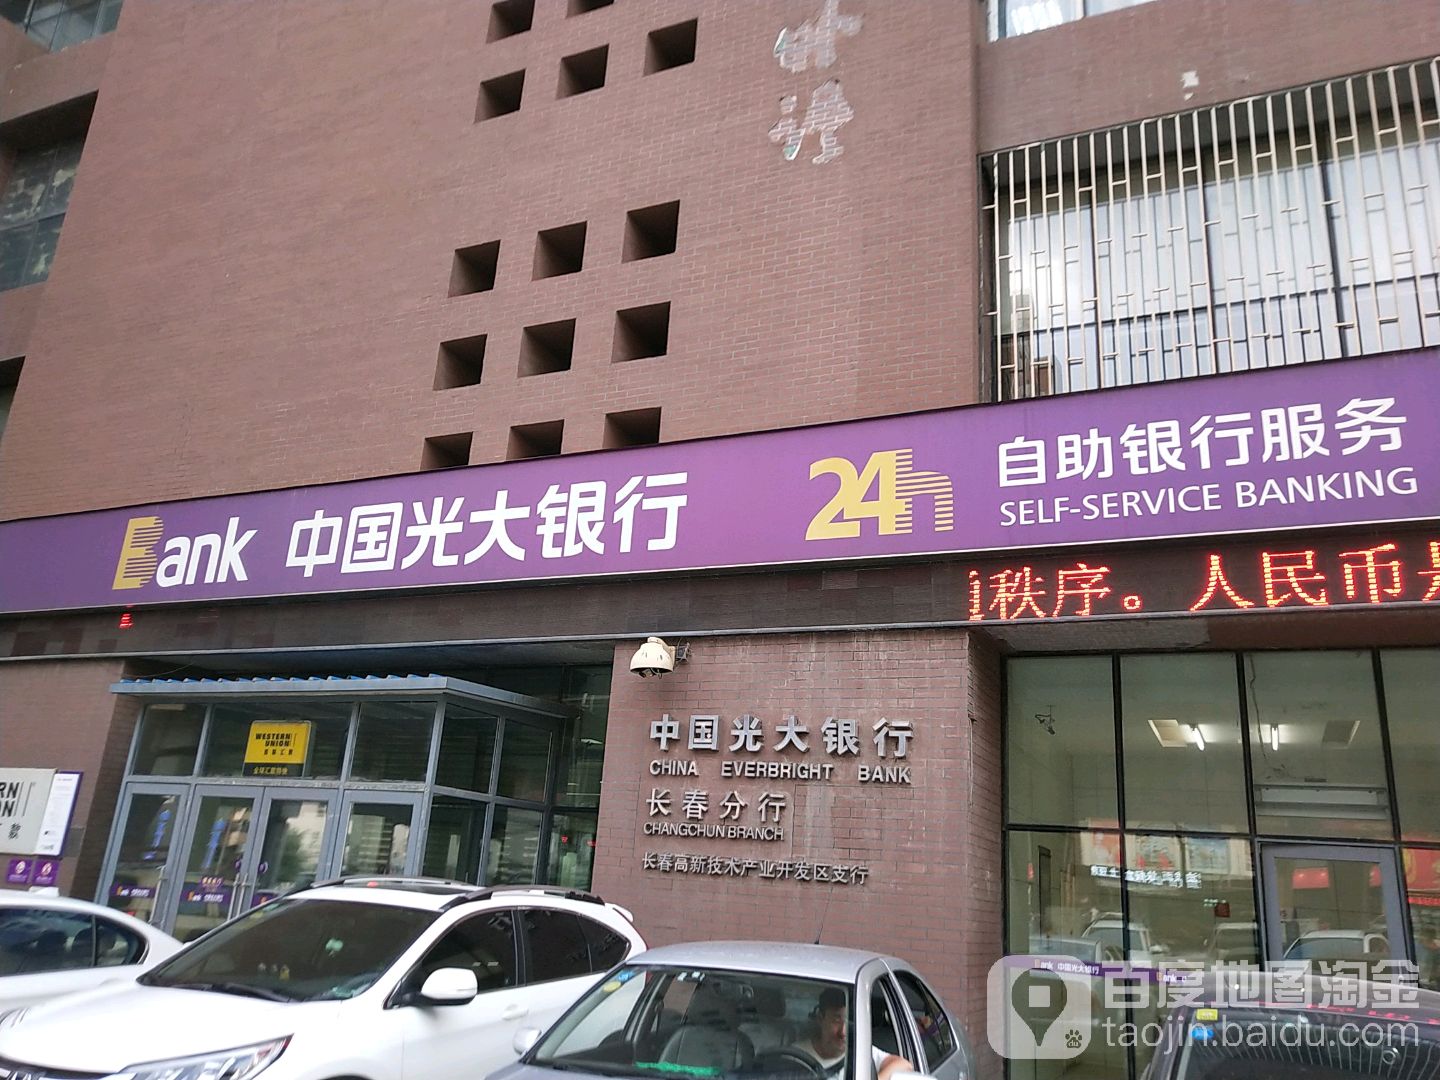 中國光大銀行24小時自助銀行(長春高新技術產業開發區支行)